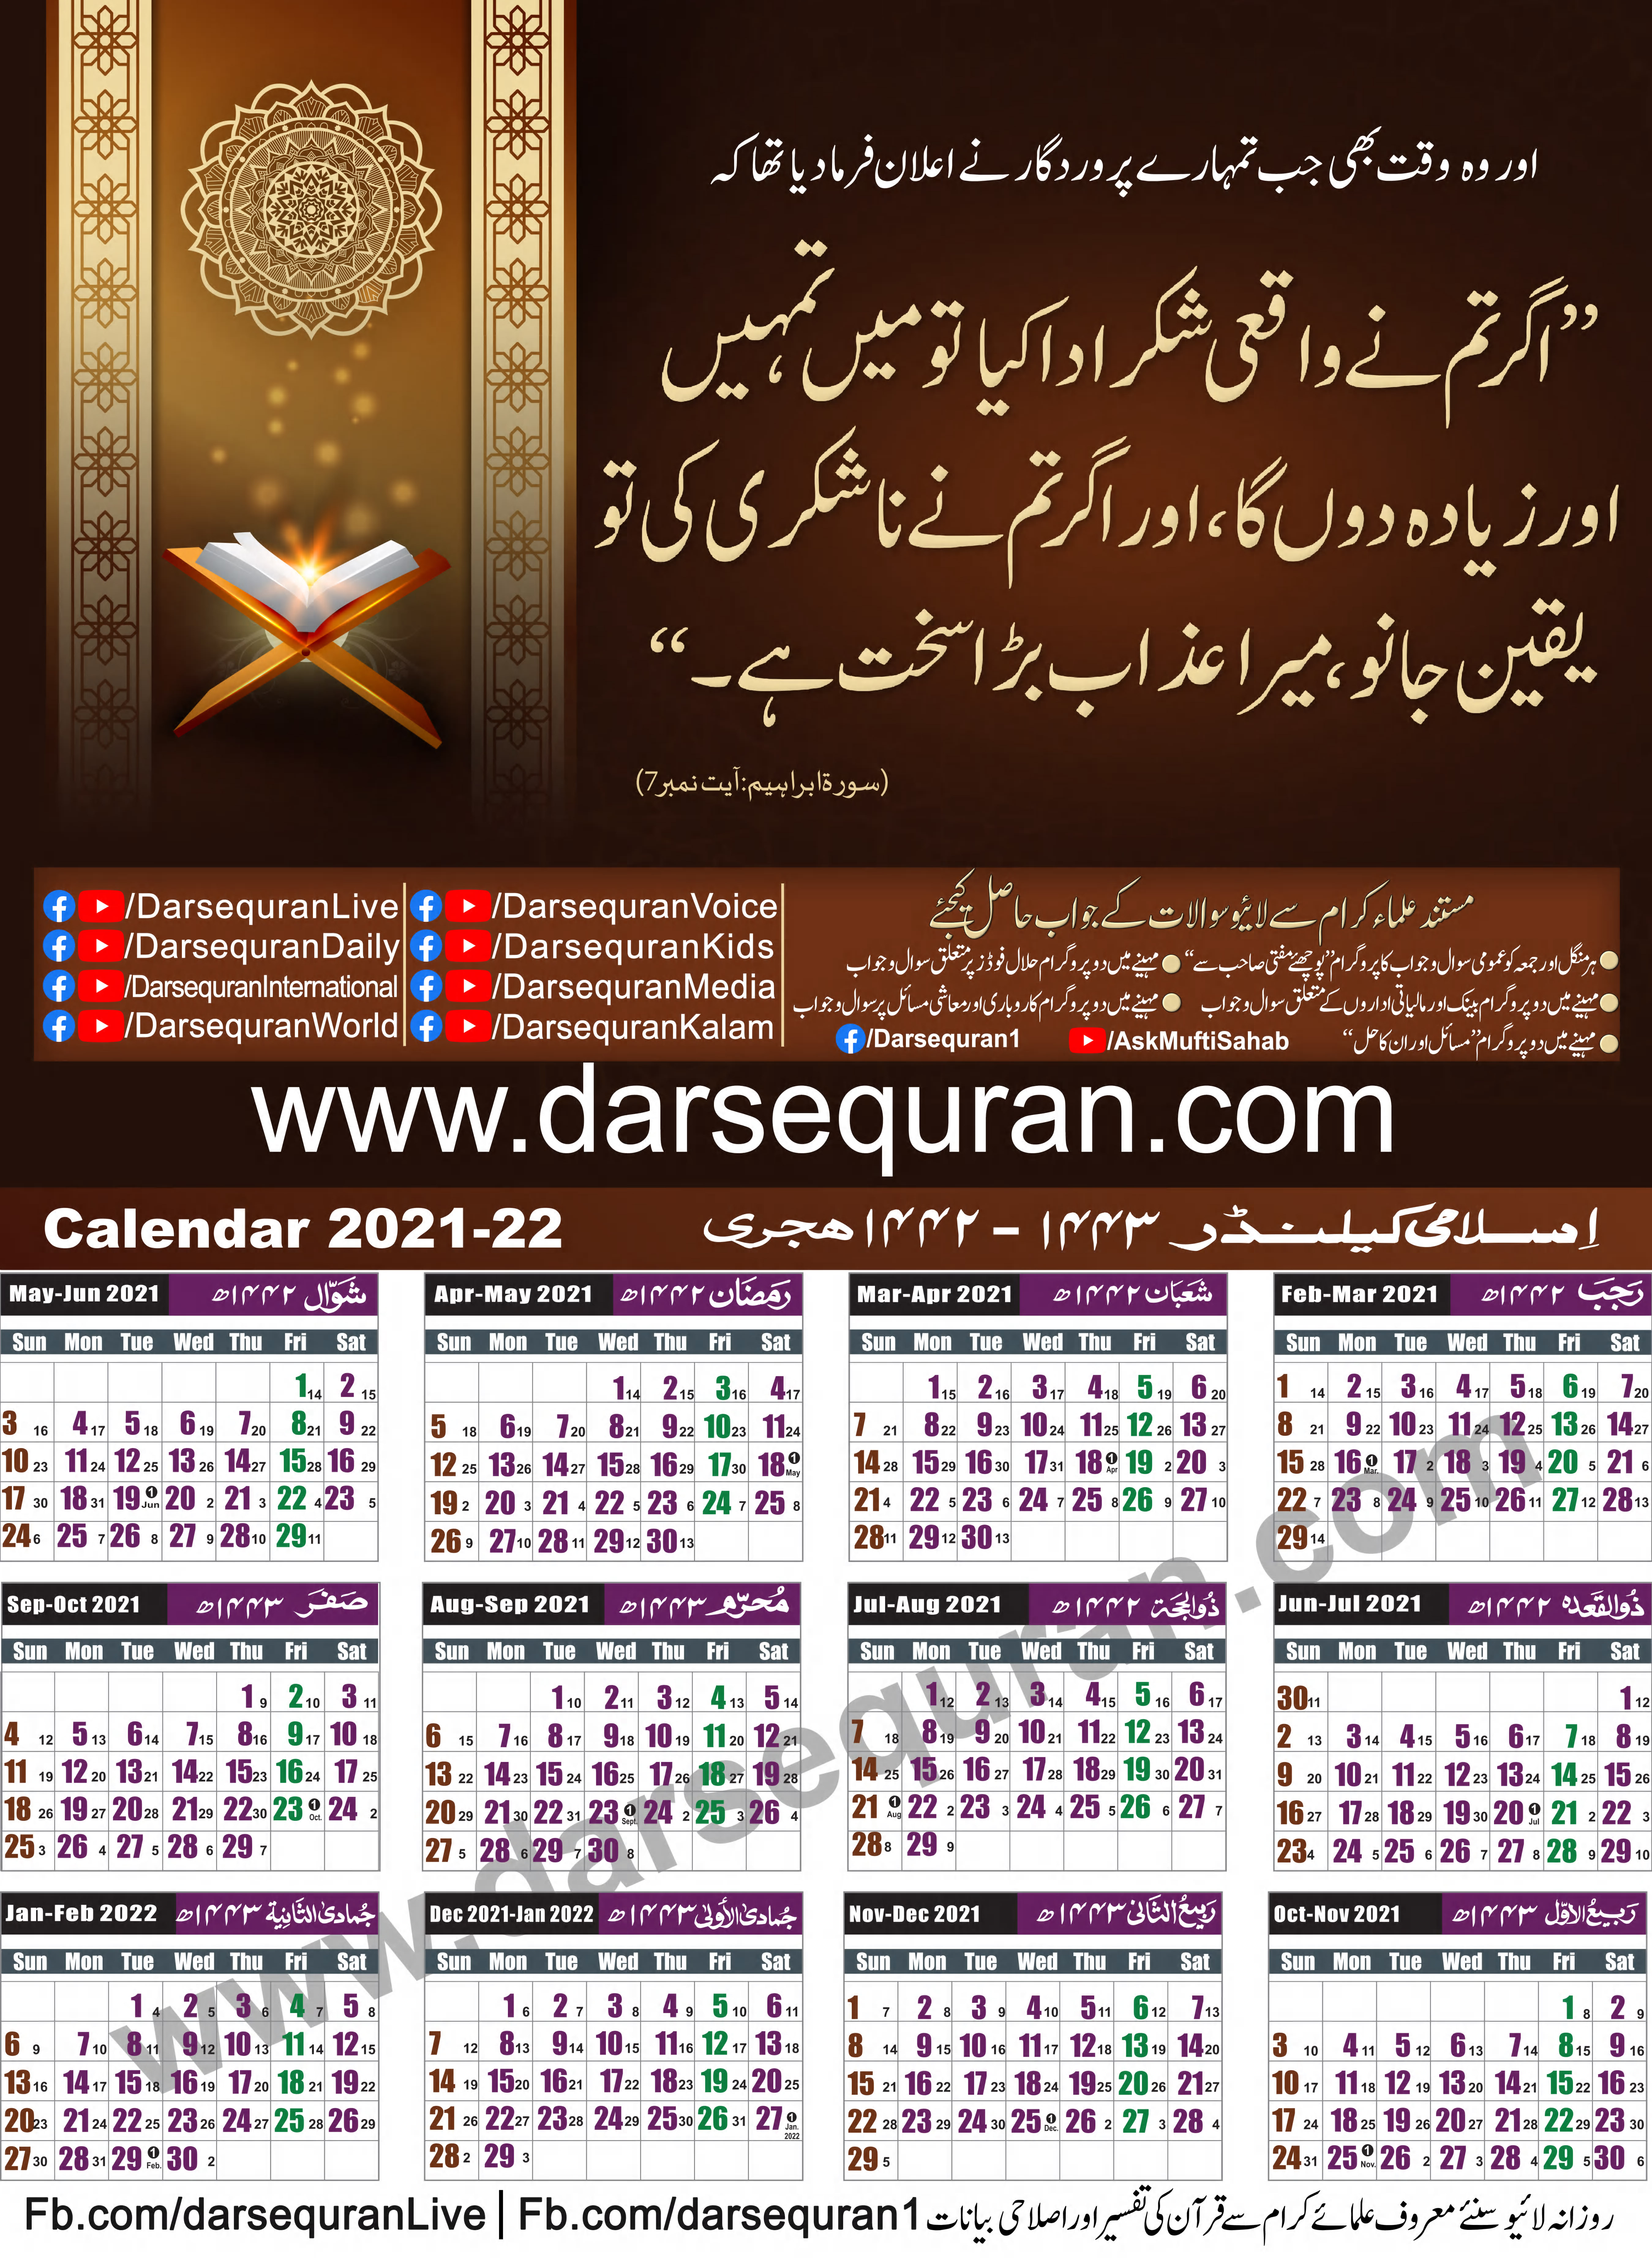 Islamic Calendar 1442 - 1443